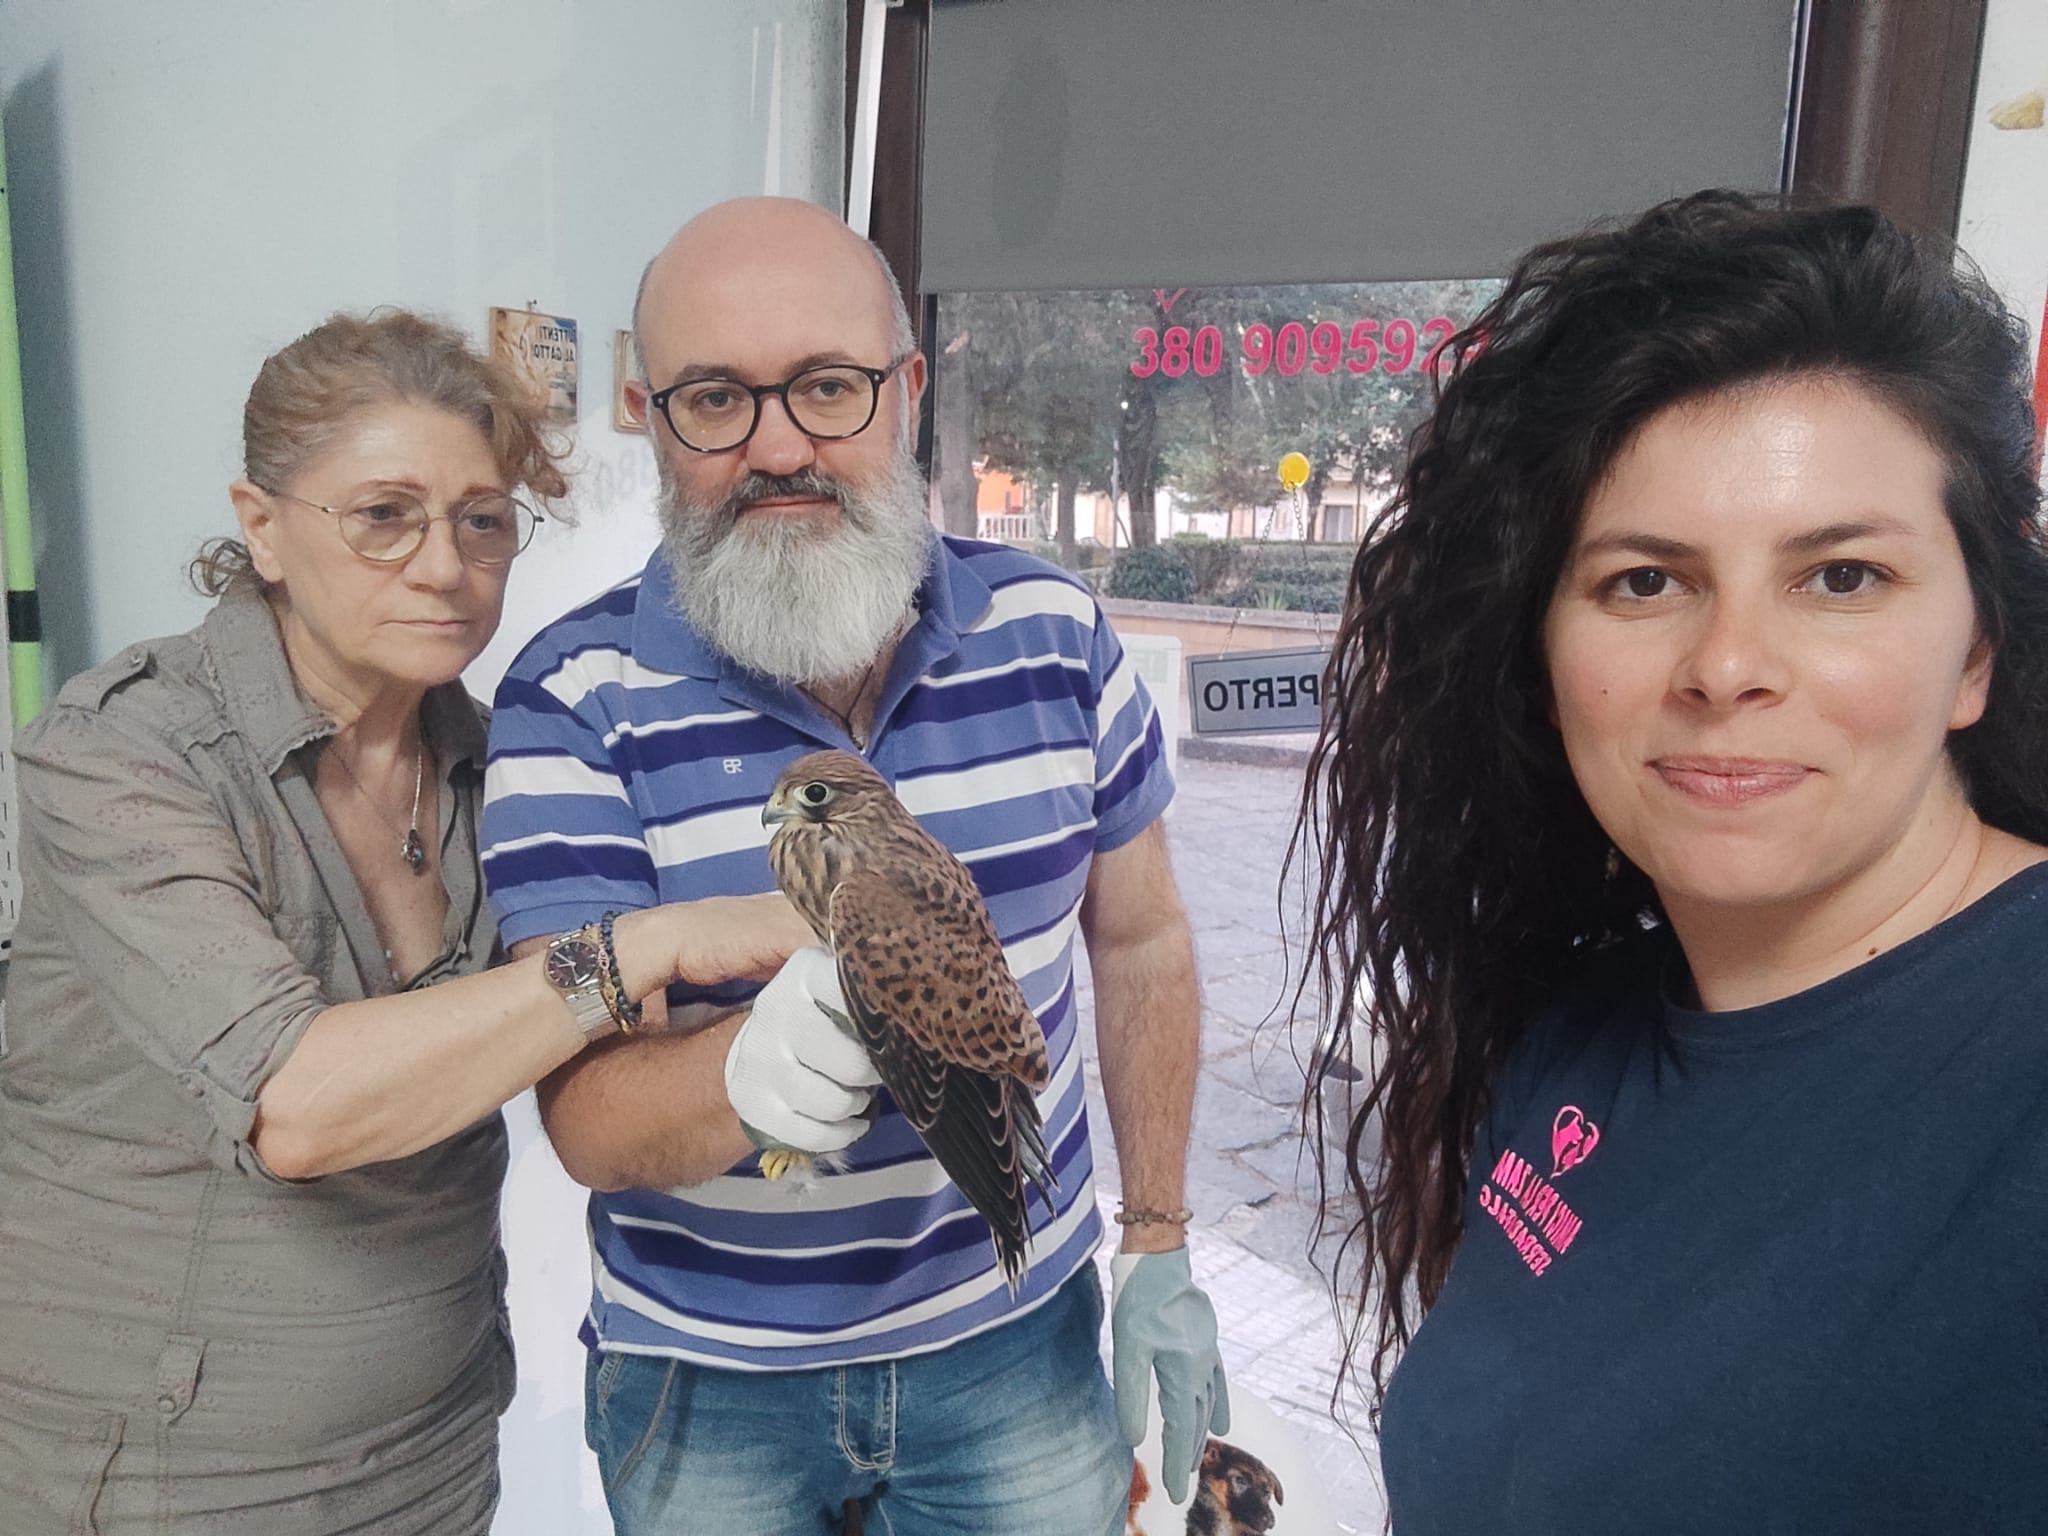 WWF Sicilia Centrale. Animali feriti e uccelli caduti dal nido: per i volontari è emergenza